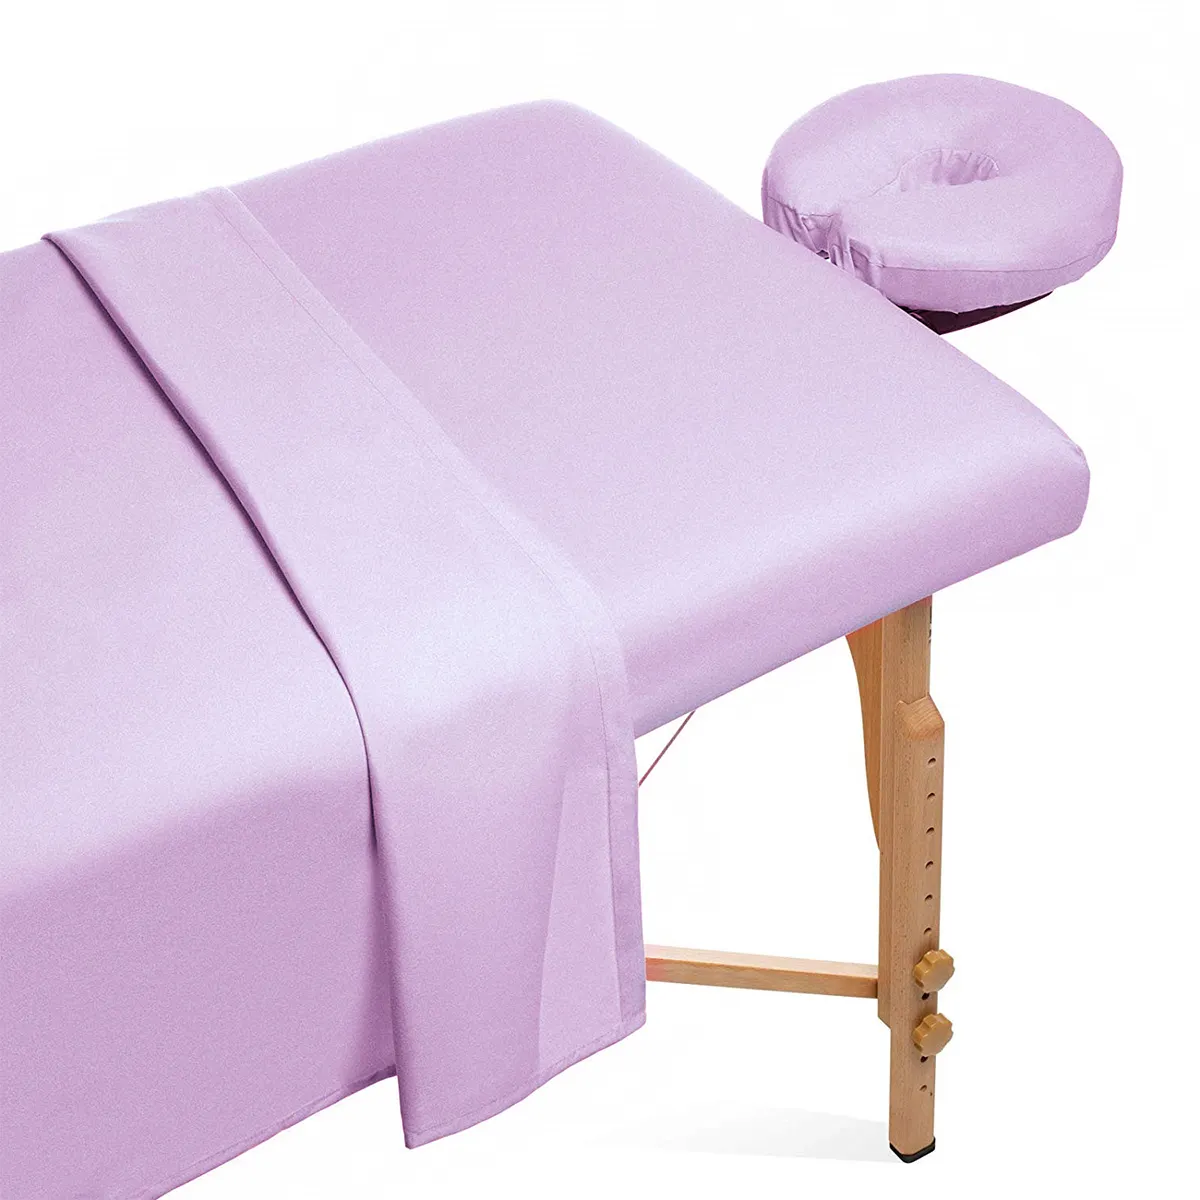 طقم غطاء سرير لطاولة التدليك لصالونات التجميل ومركز السبا ملاءة